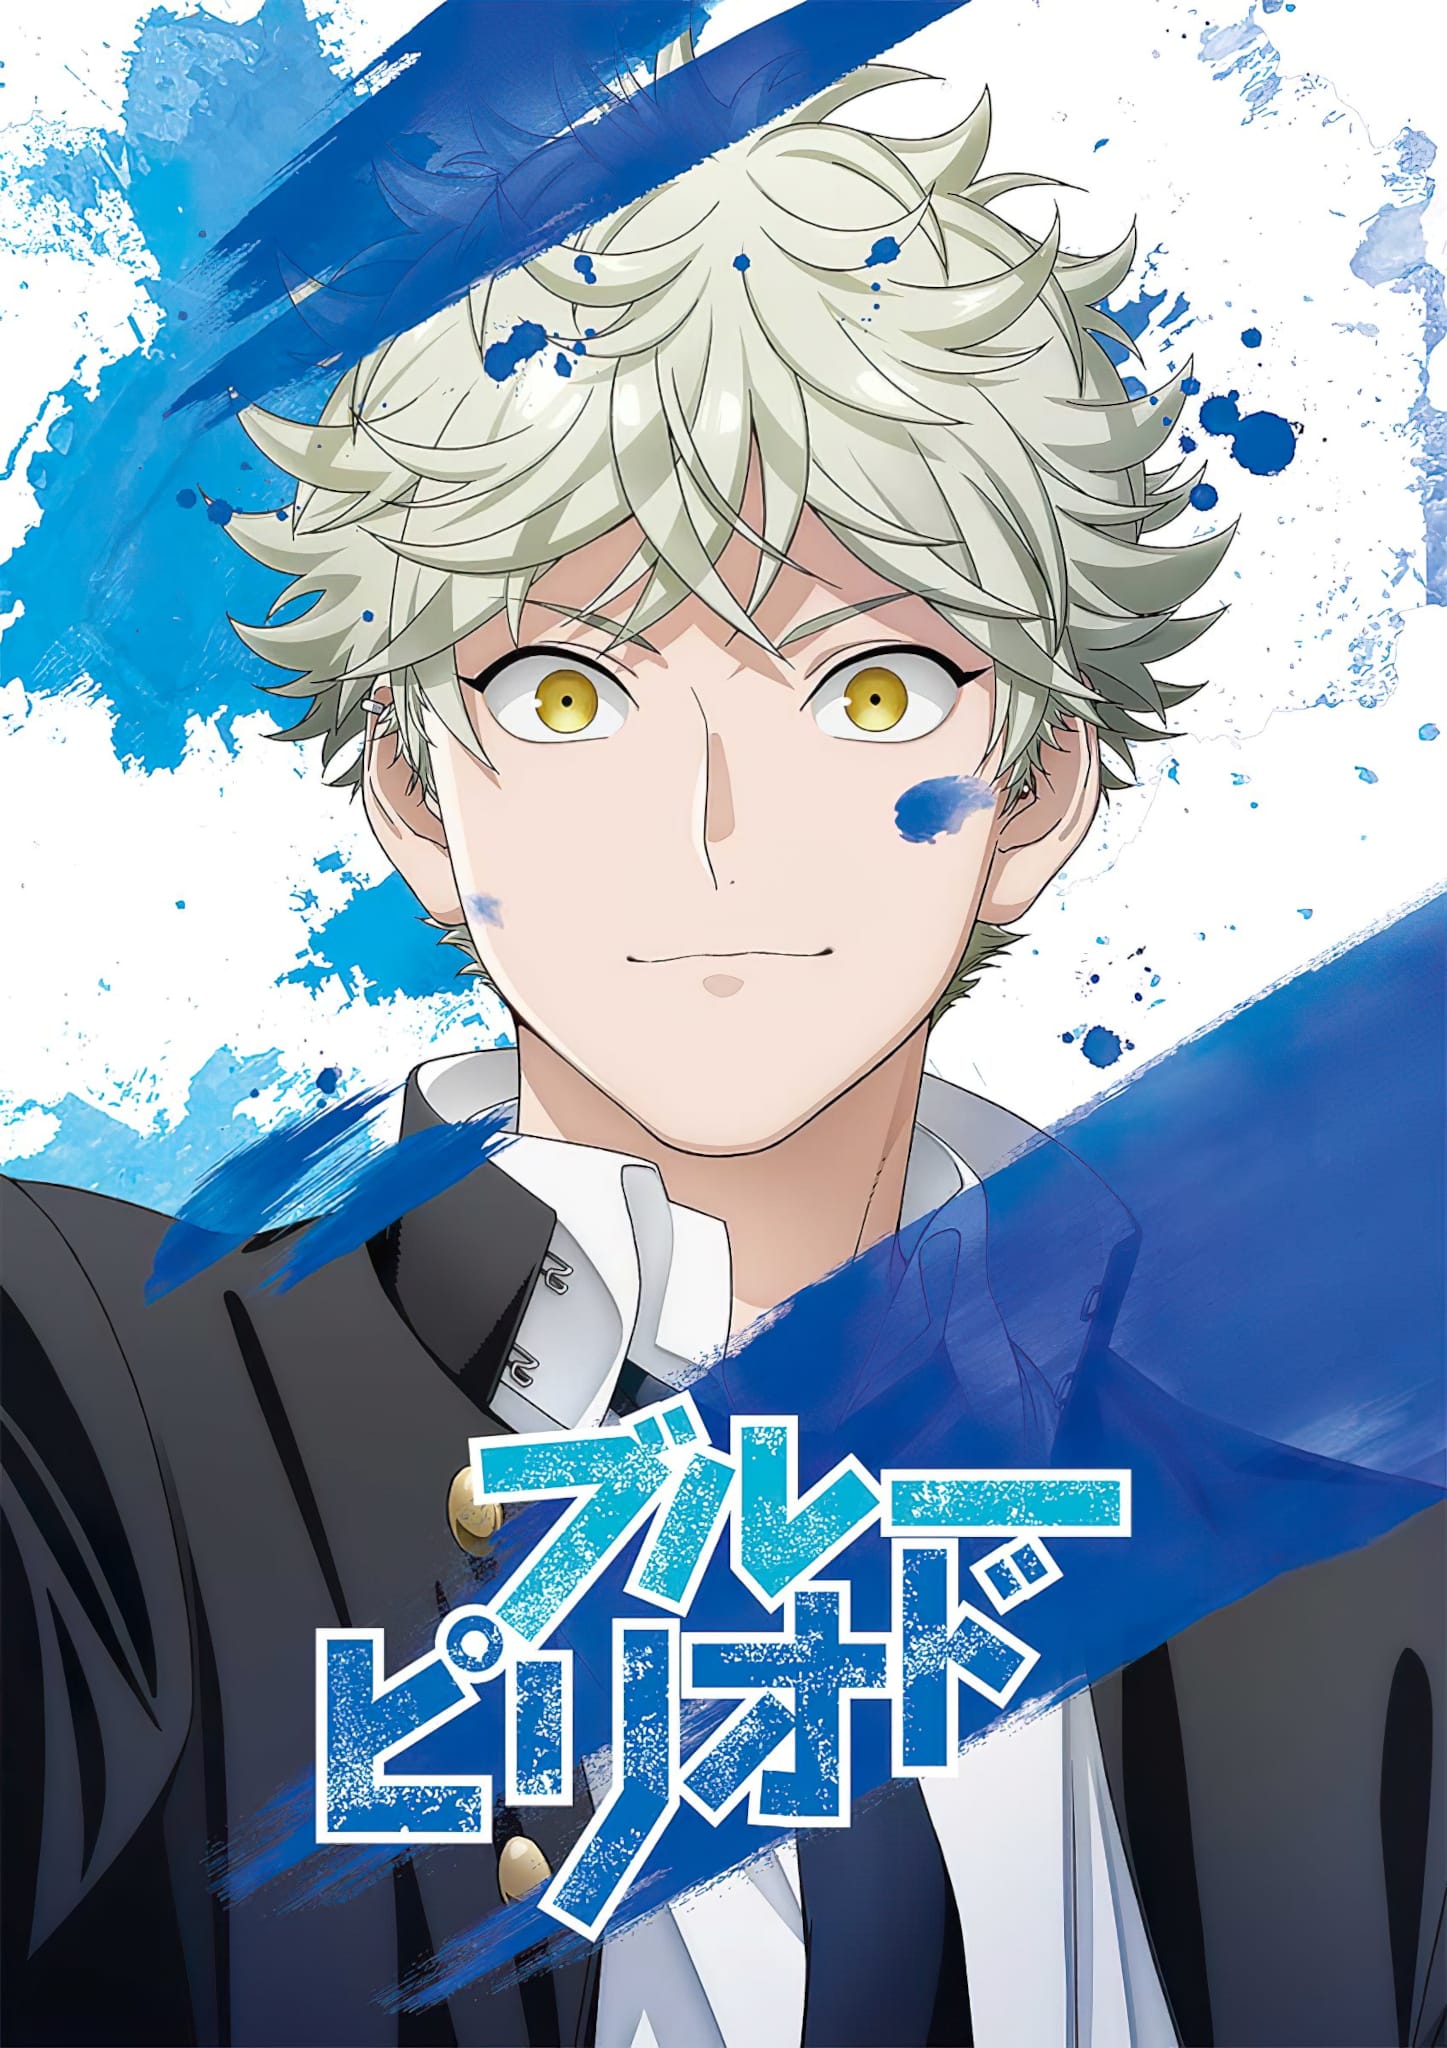 Annonce de la date de sortie de anime Blue Period